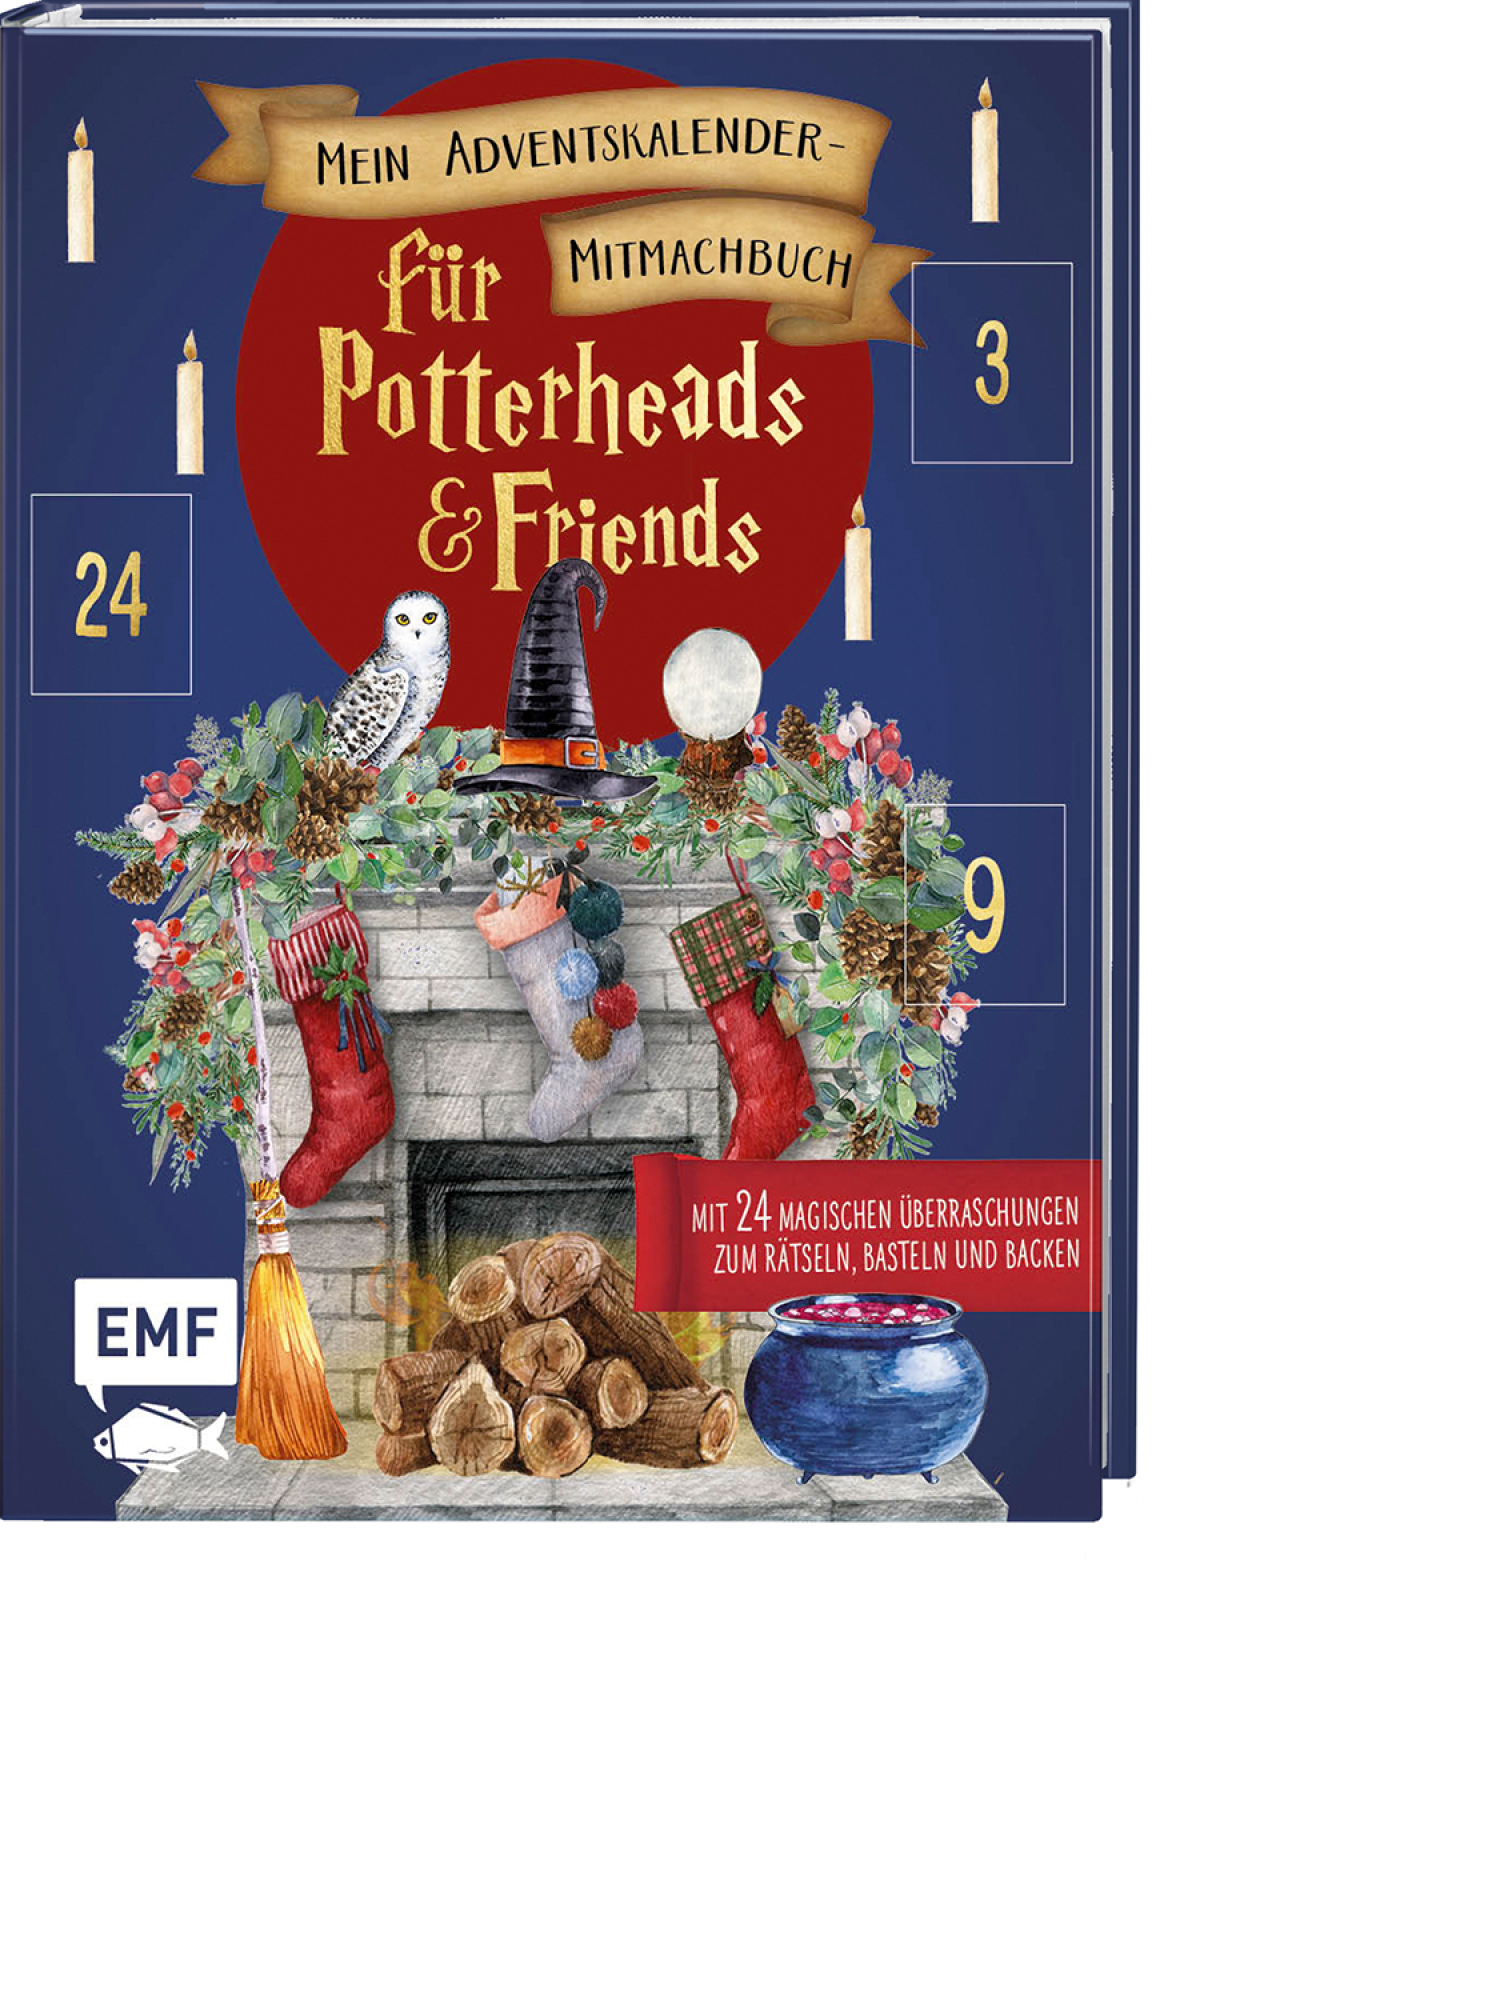 Mein Adventskalender-Mitmachbuch für Potterheads and Friends, Produktbild 1